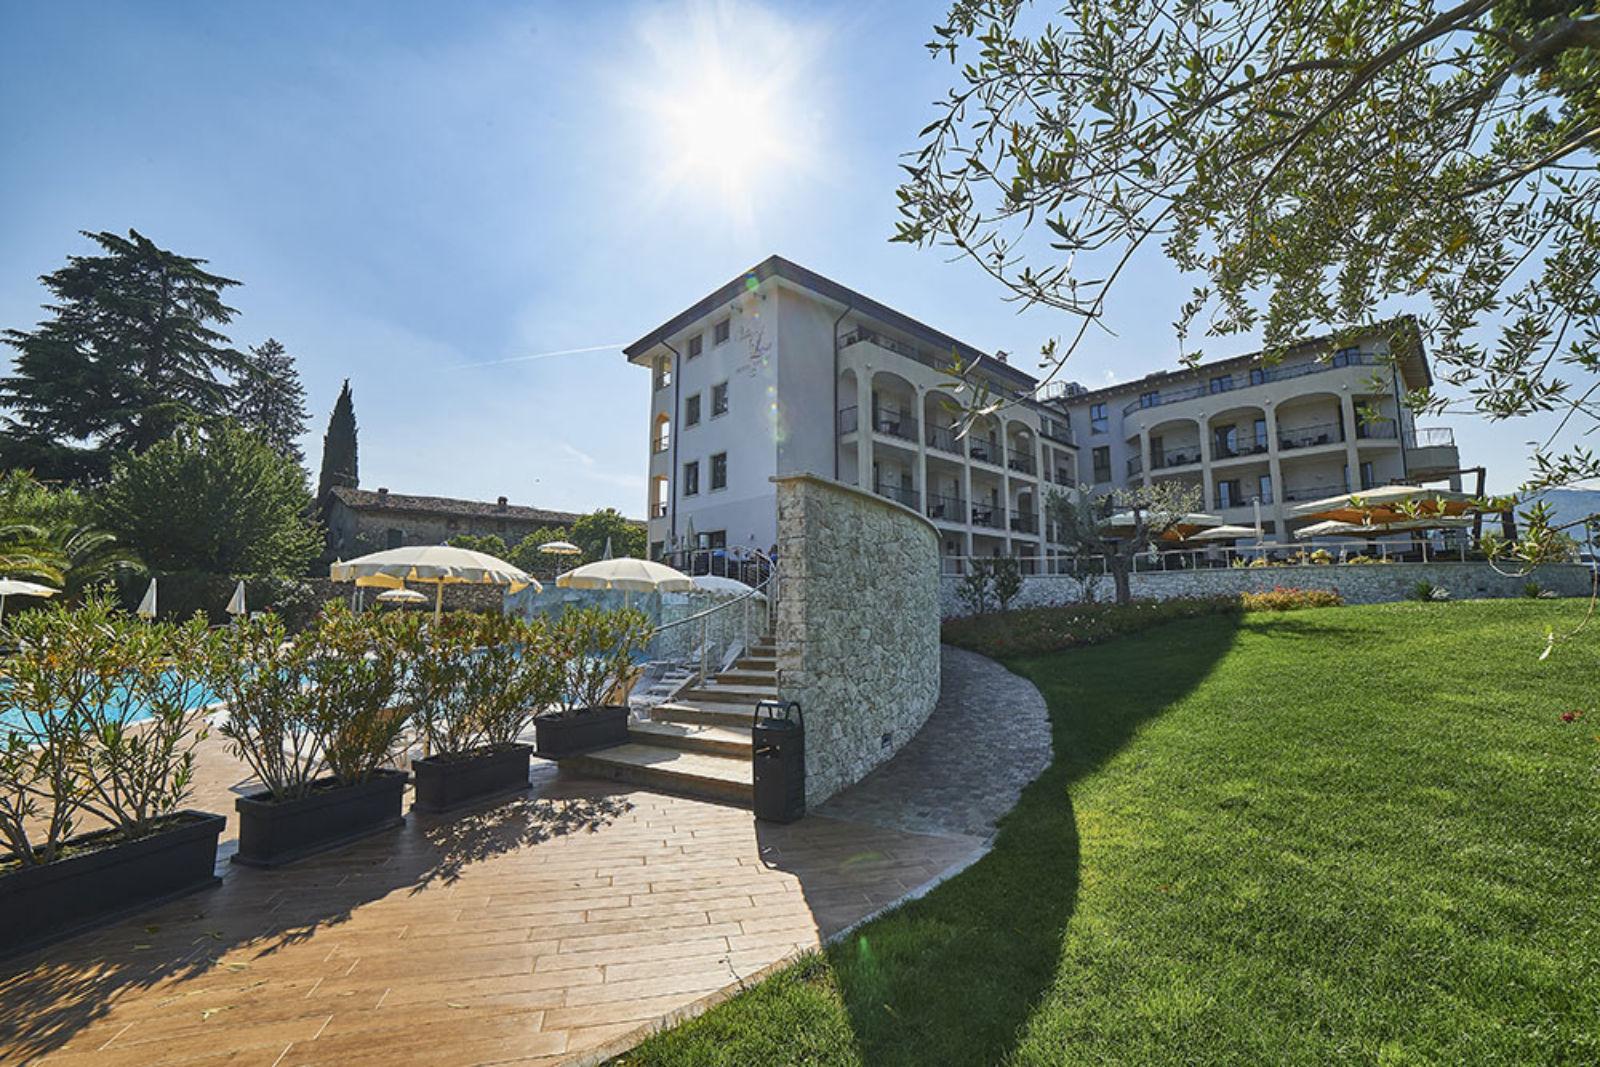 Villa Luisa Resort & Spa